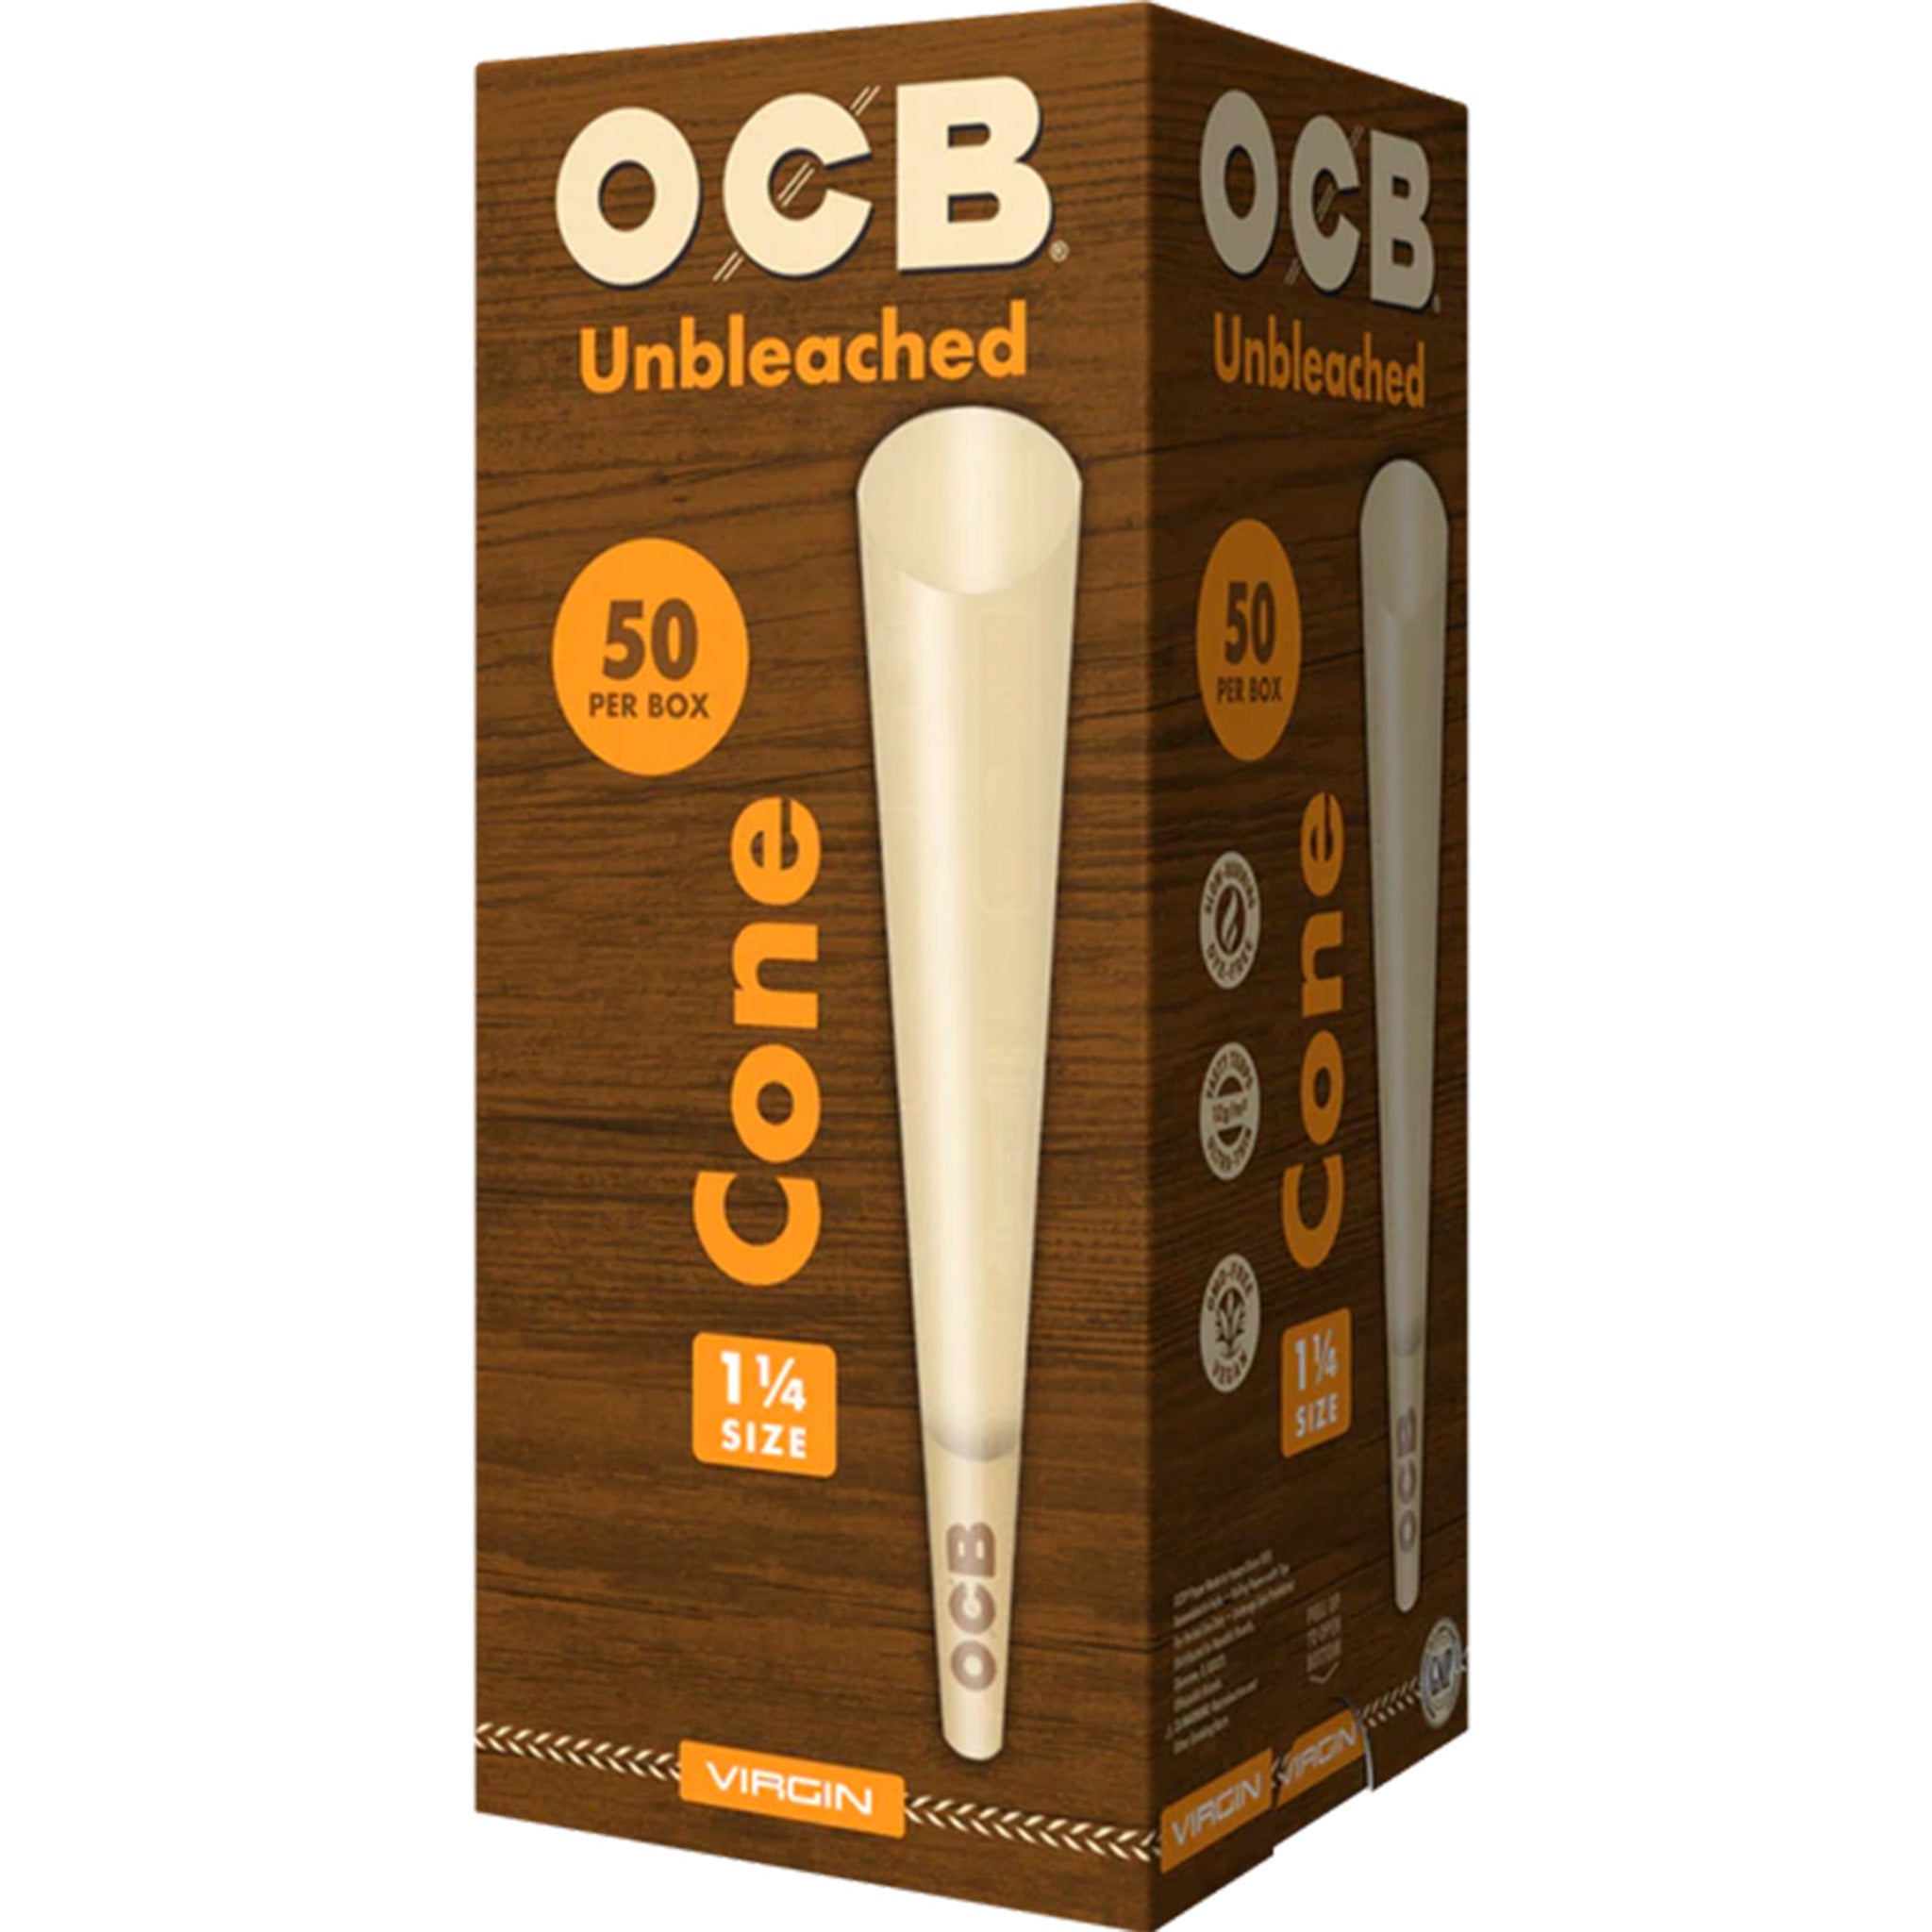 OCB Virgin 1 1/4 Cone Box 50